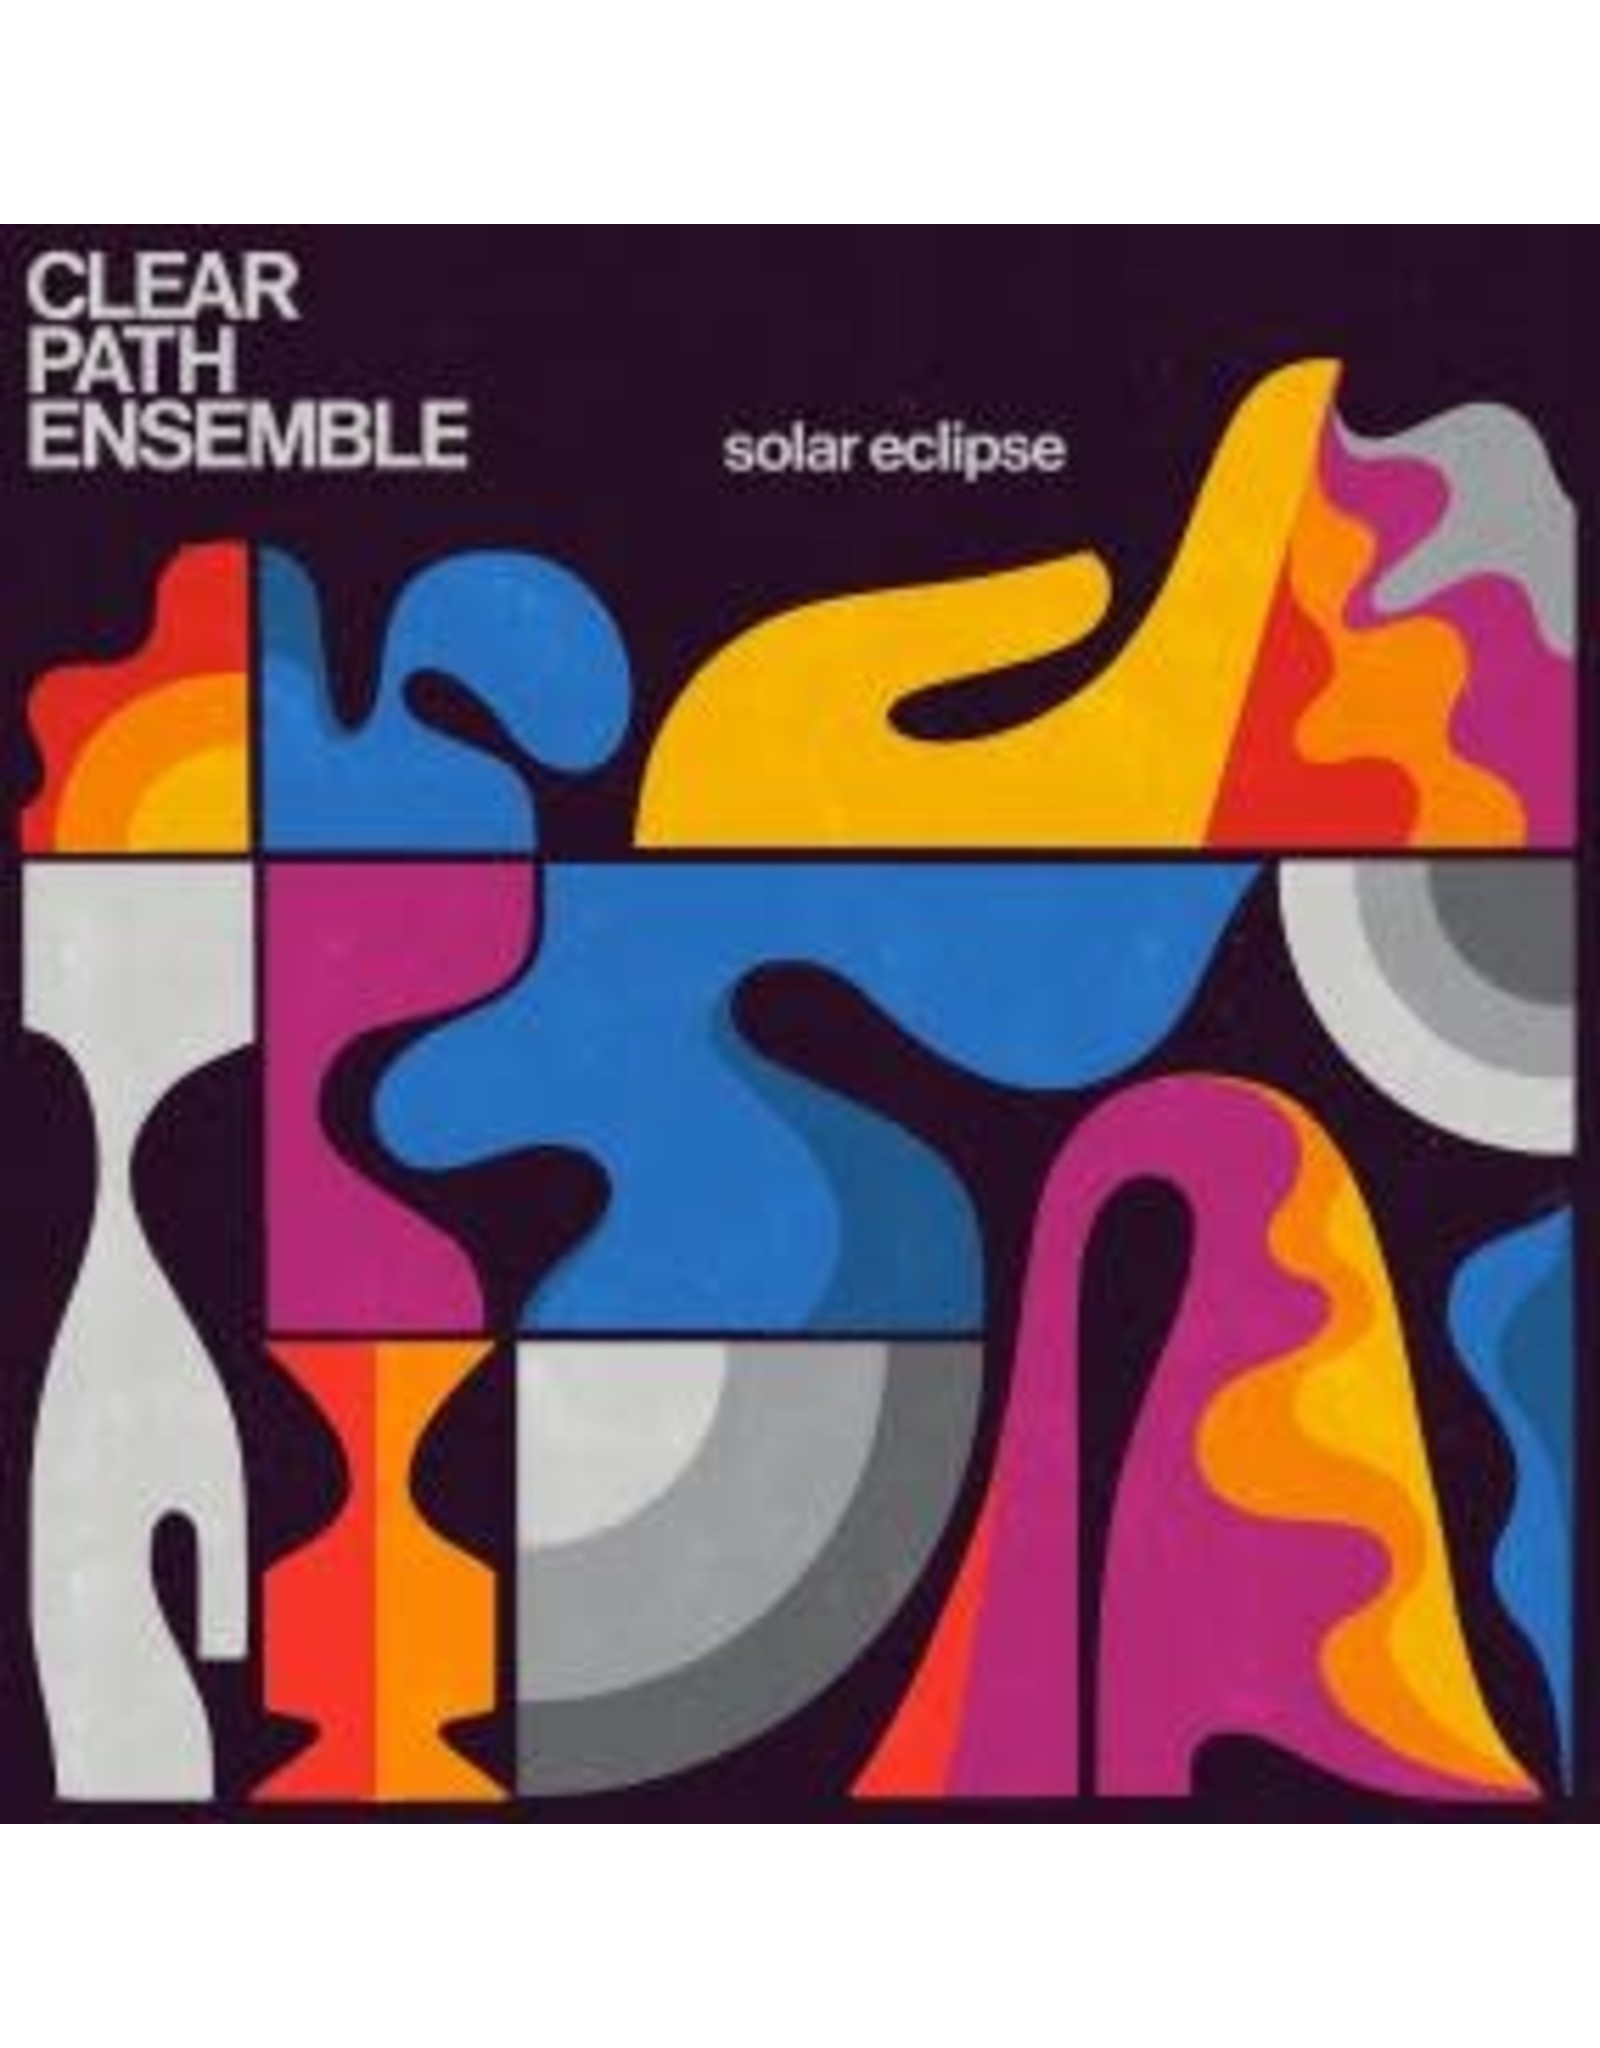 Soundways Clear Path Ensemble: Solar Eclipse LP